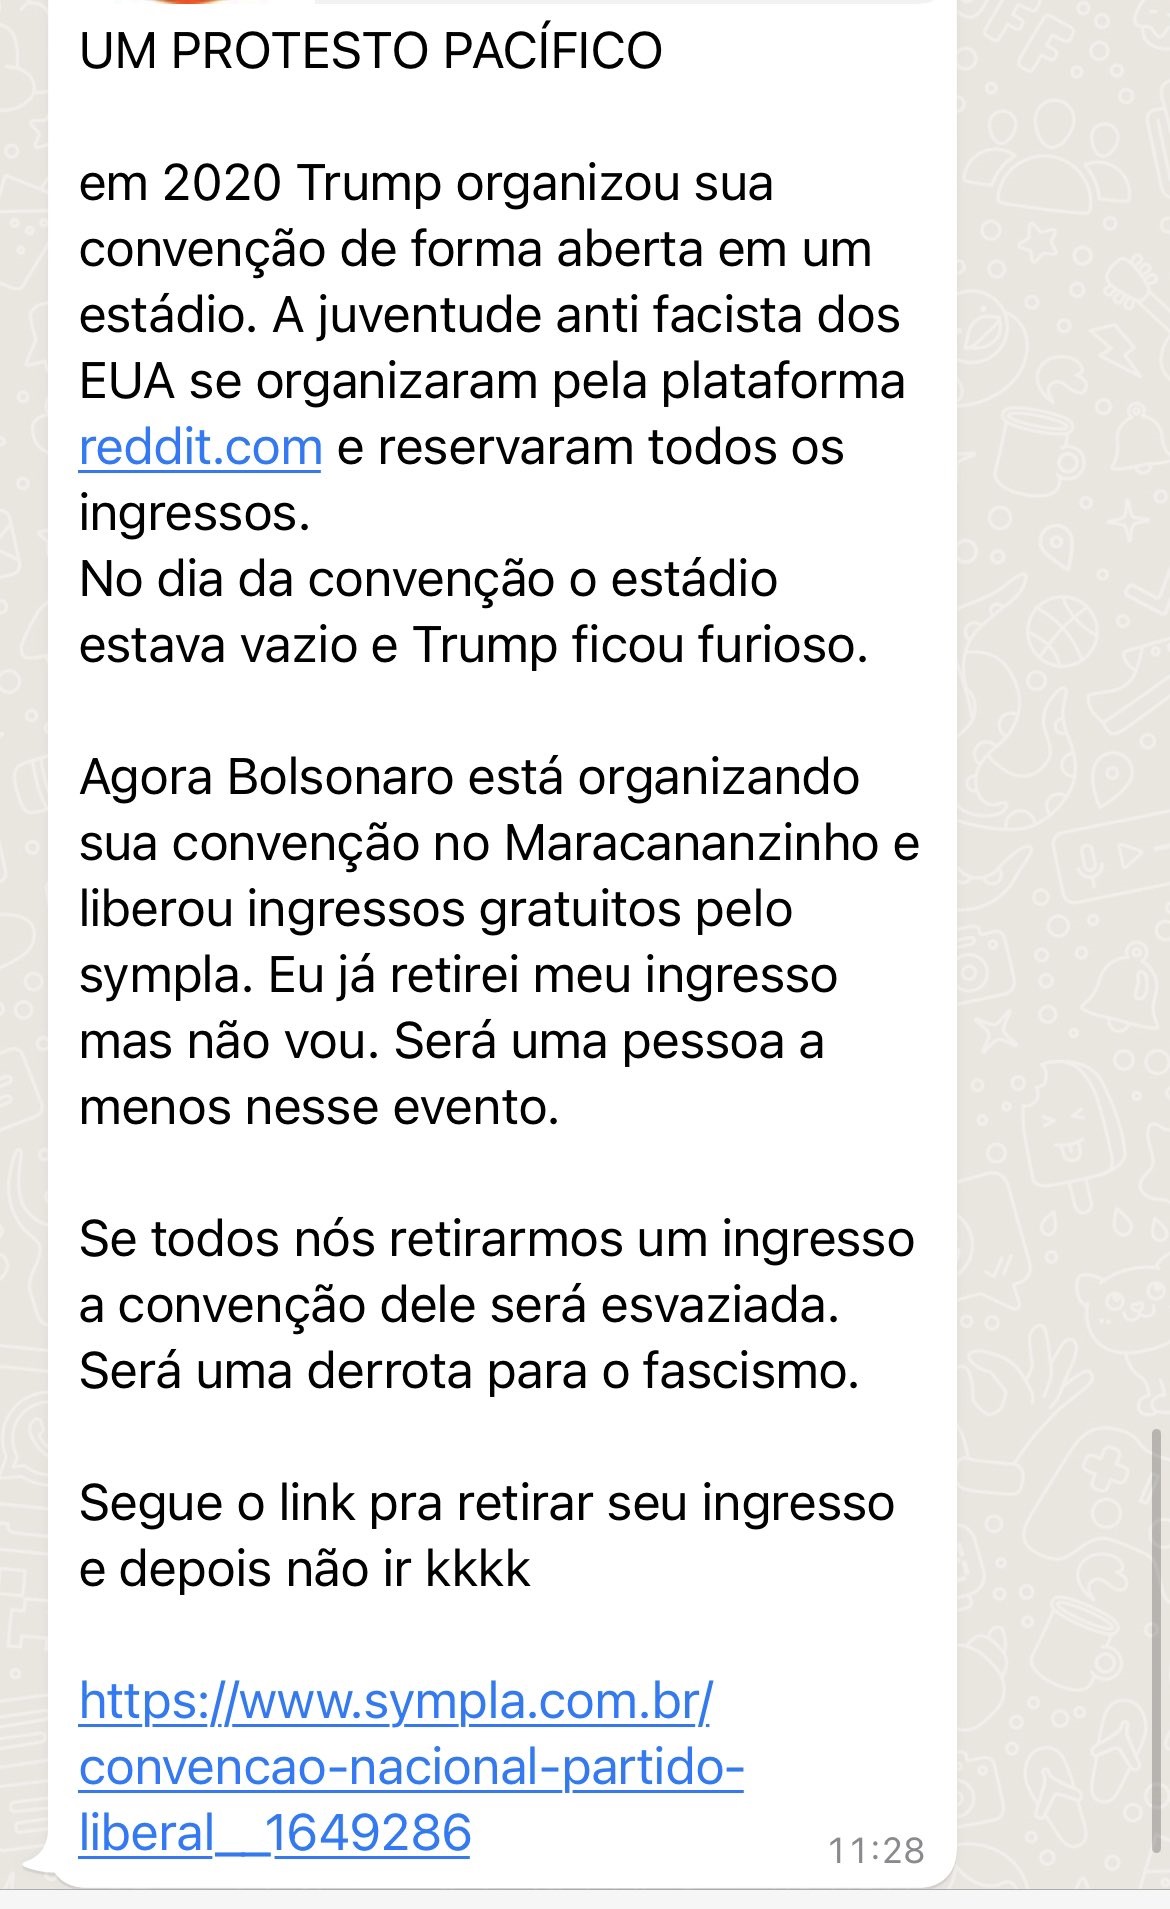 Mensagem enviada no WhatsApp convoca opositores de Jair Bolsonaro para um "protesto pacífico". 